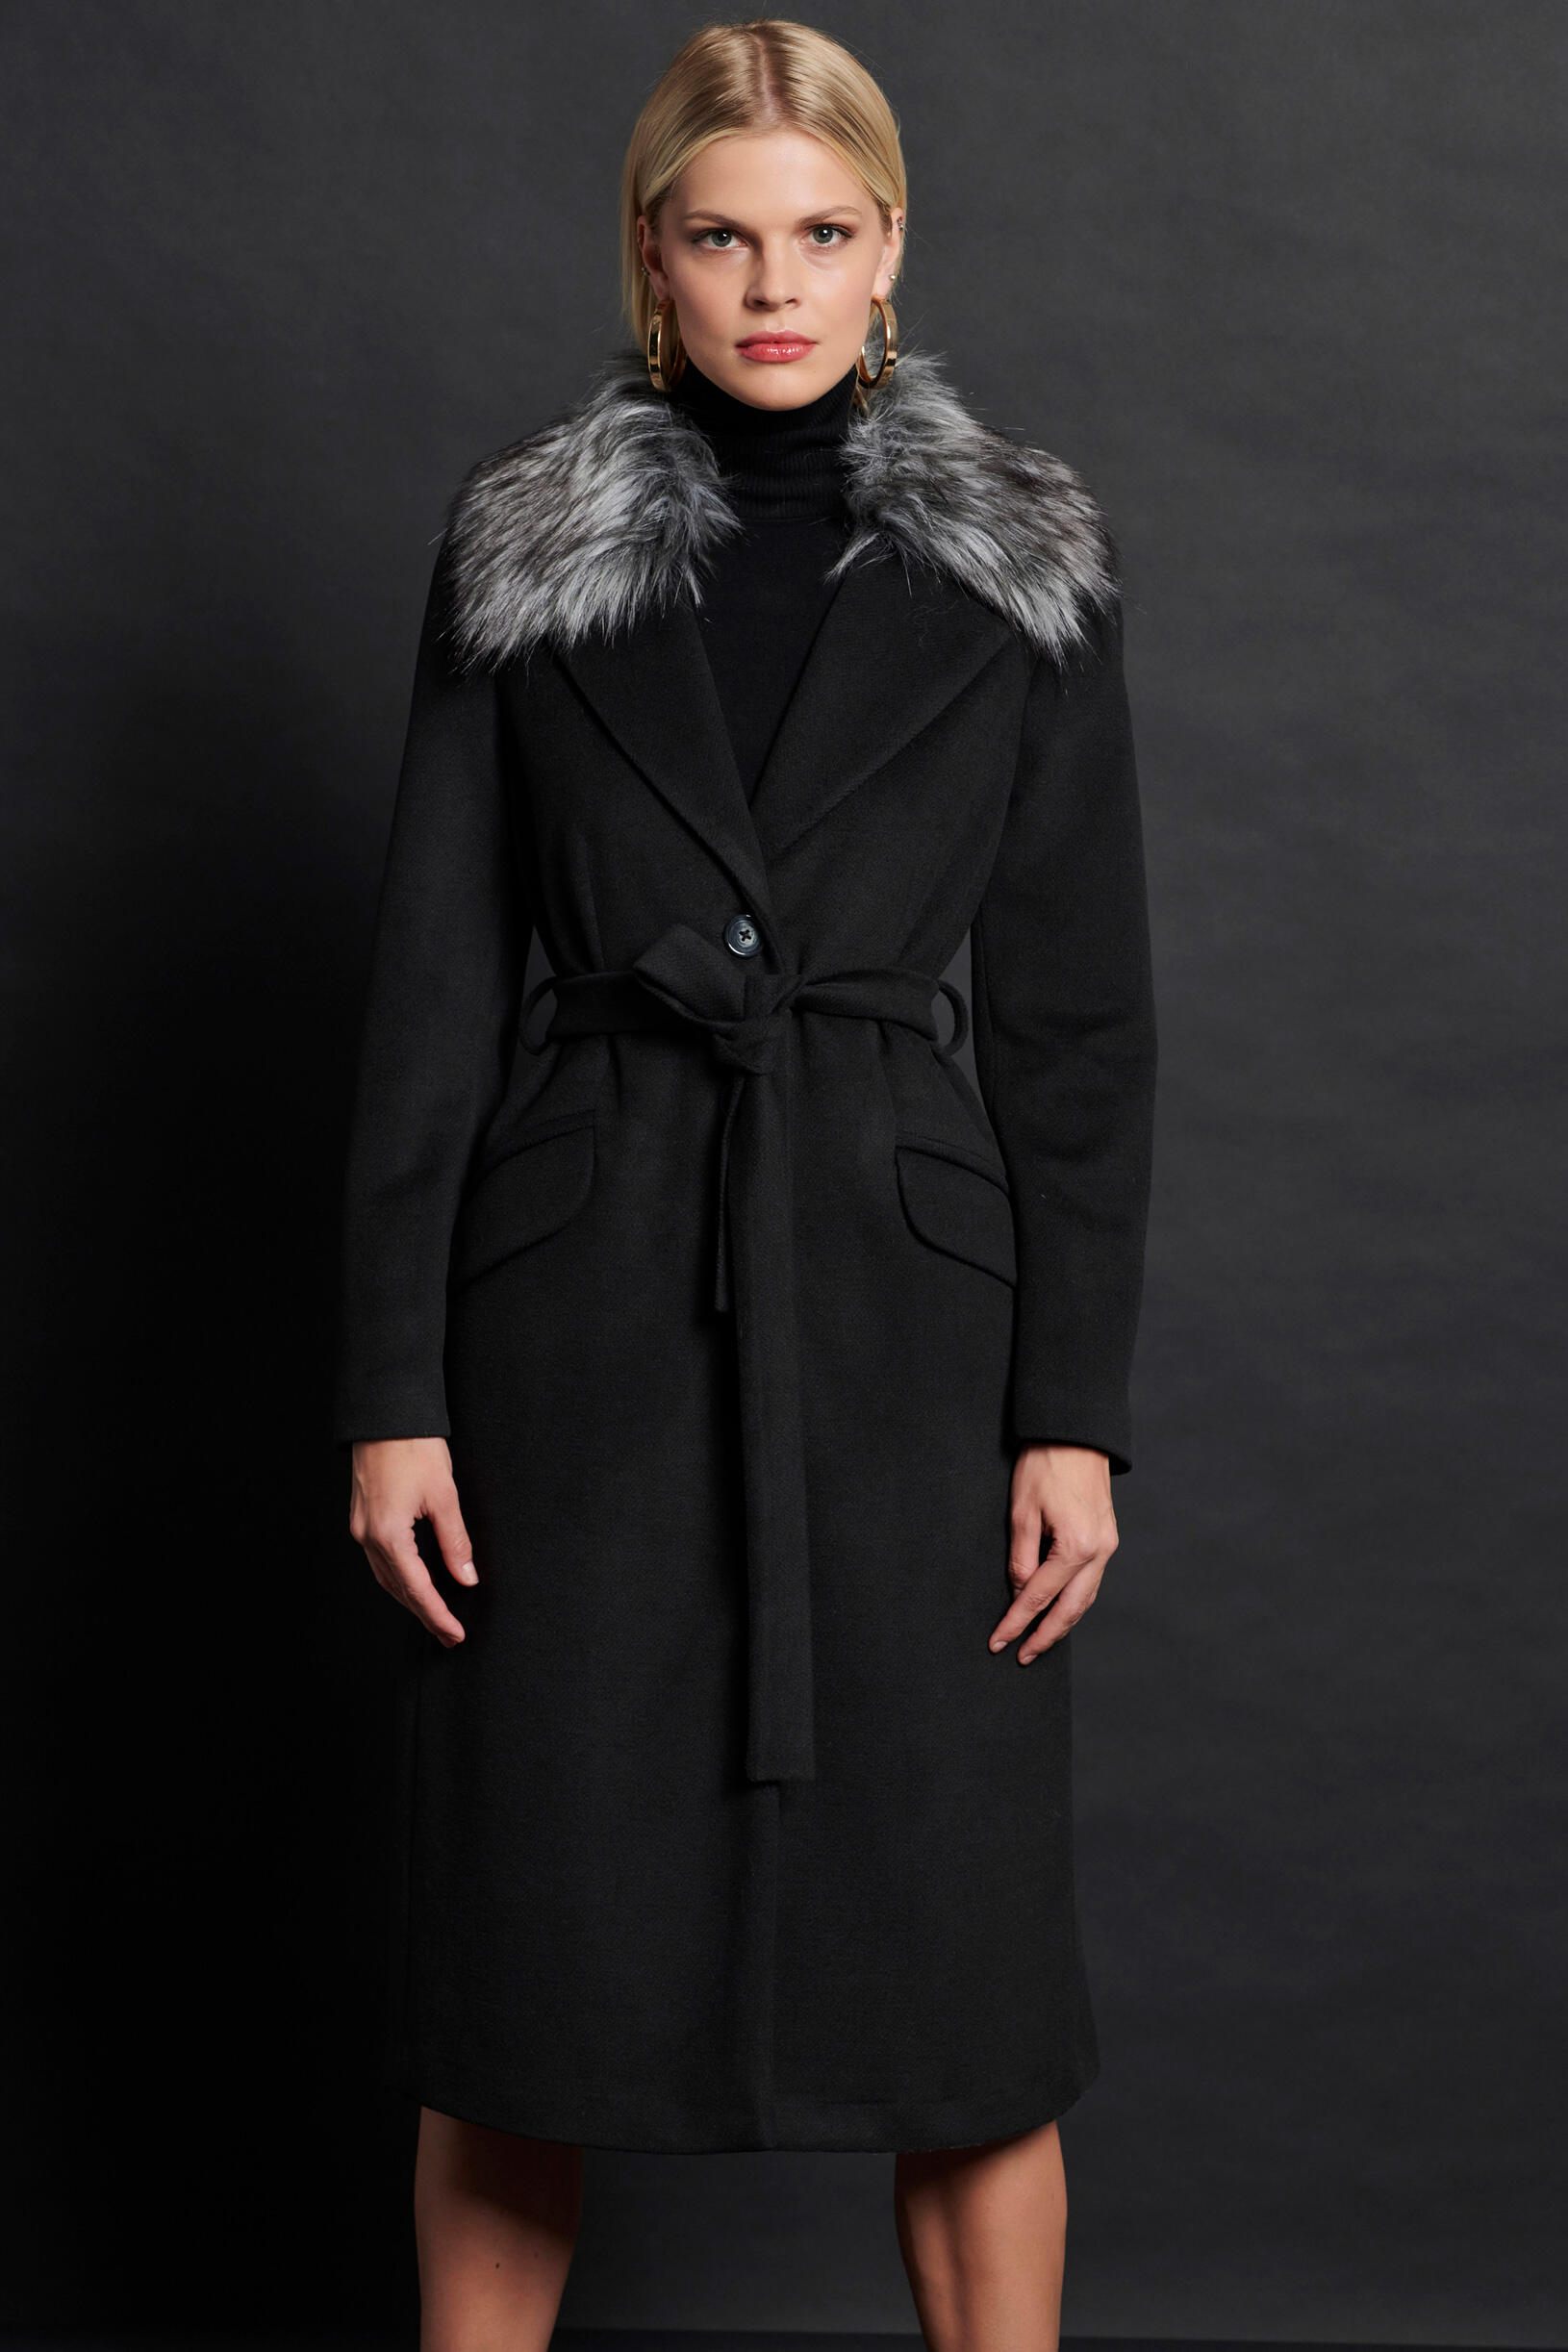 Παλτό μακρύ με συνθετική γούνα | Γυναικεία Ρούχα Bill Cost